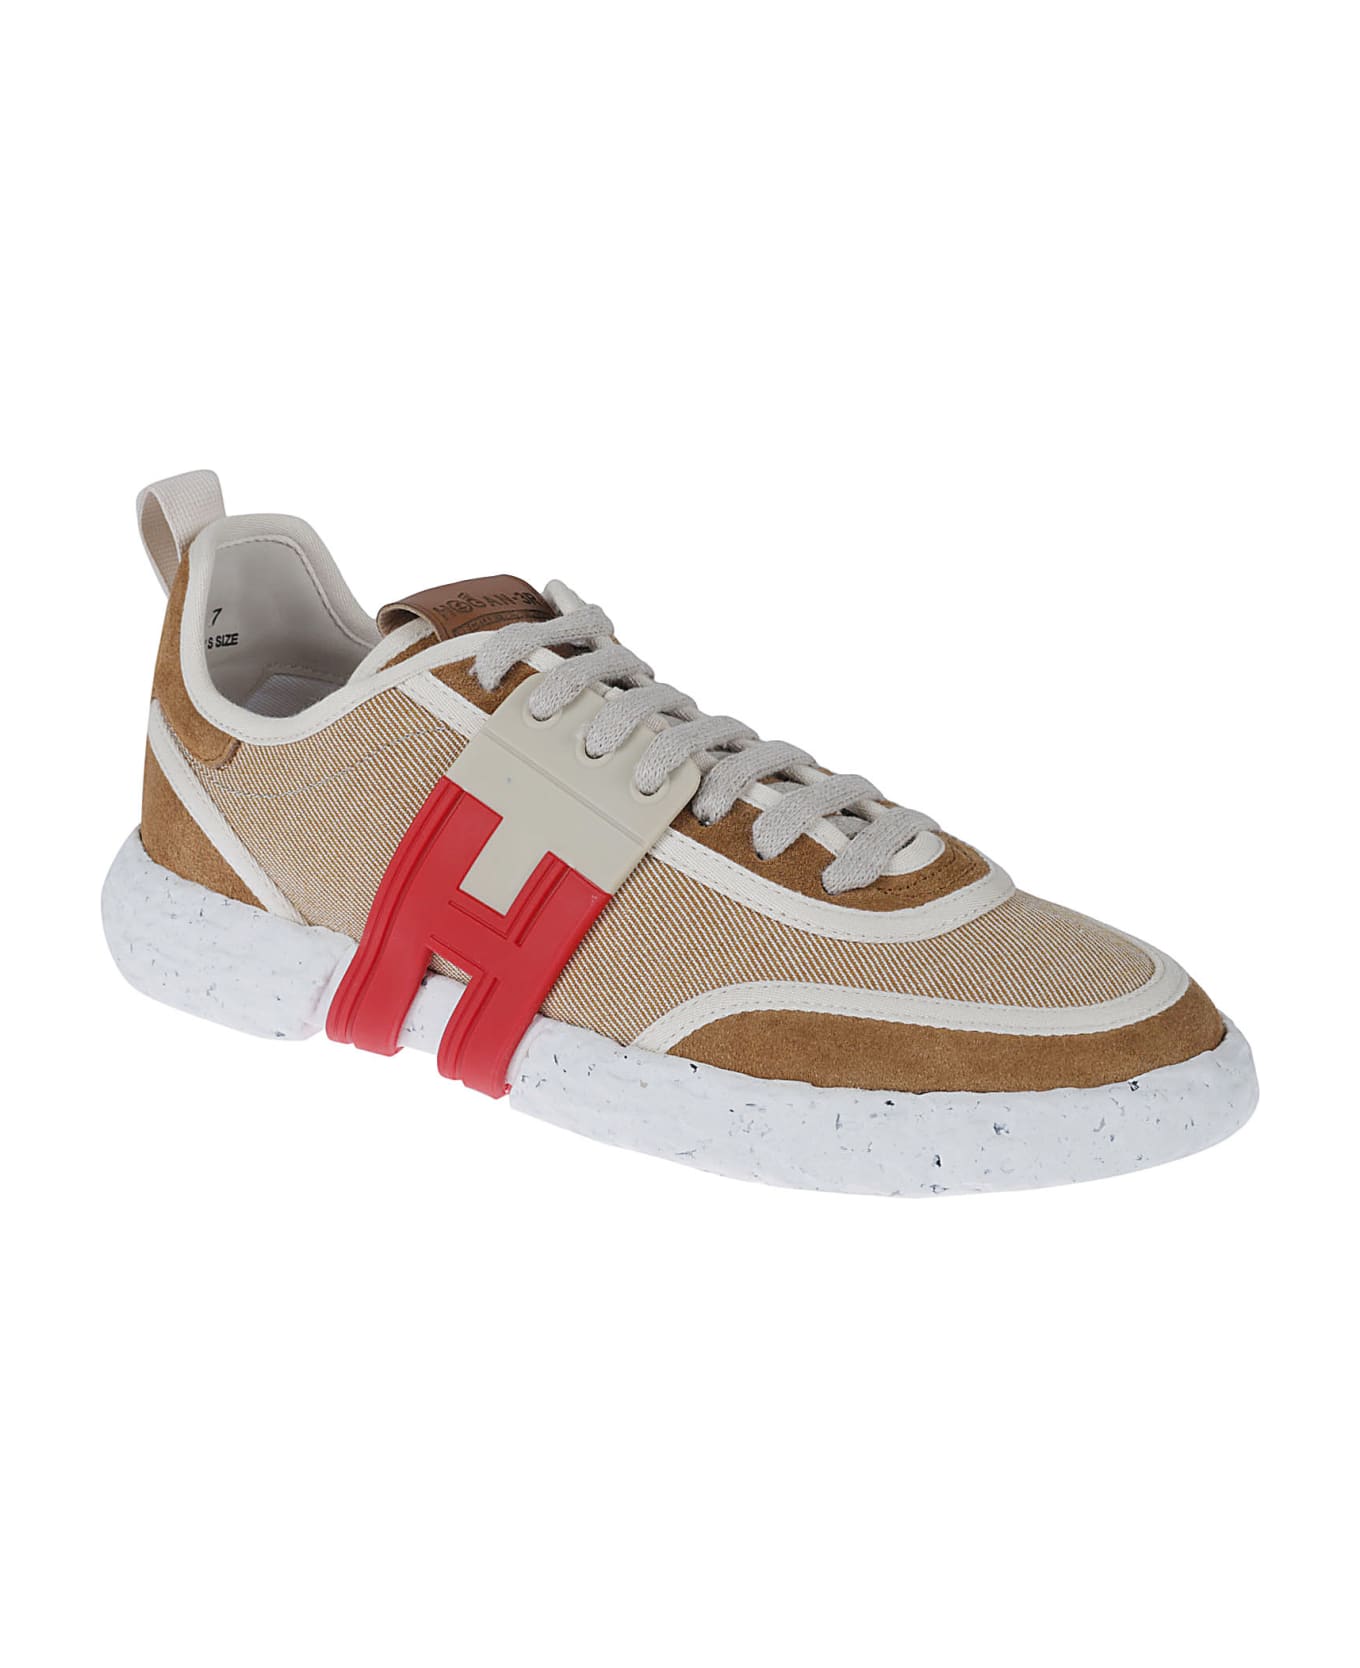 Hogan 3r Sneakers - Caramel